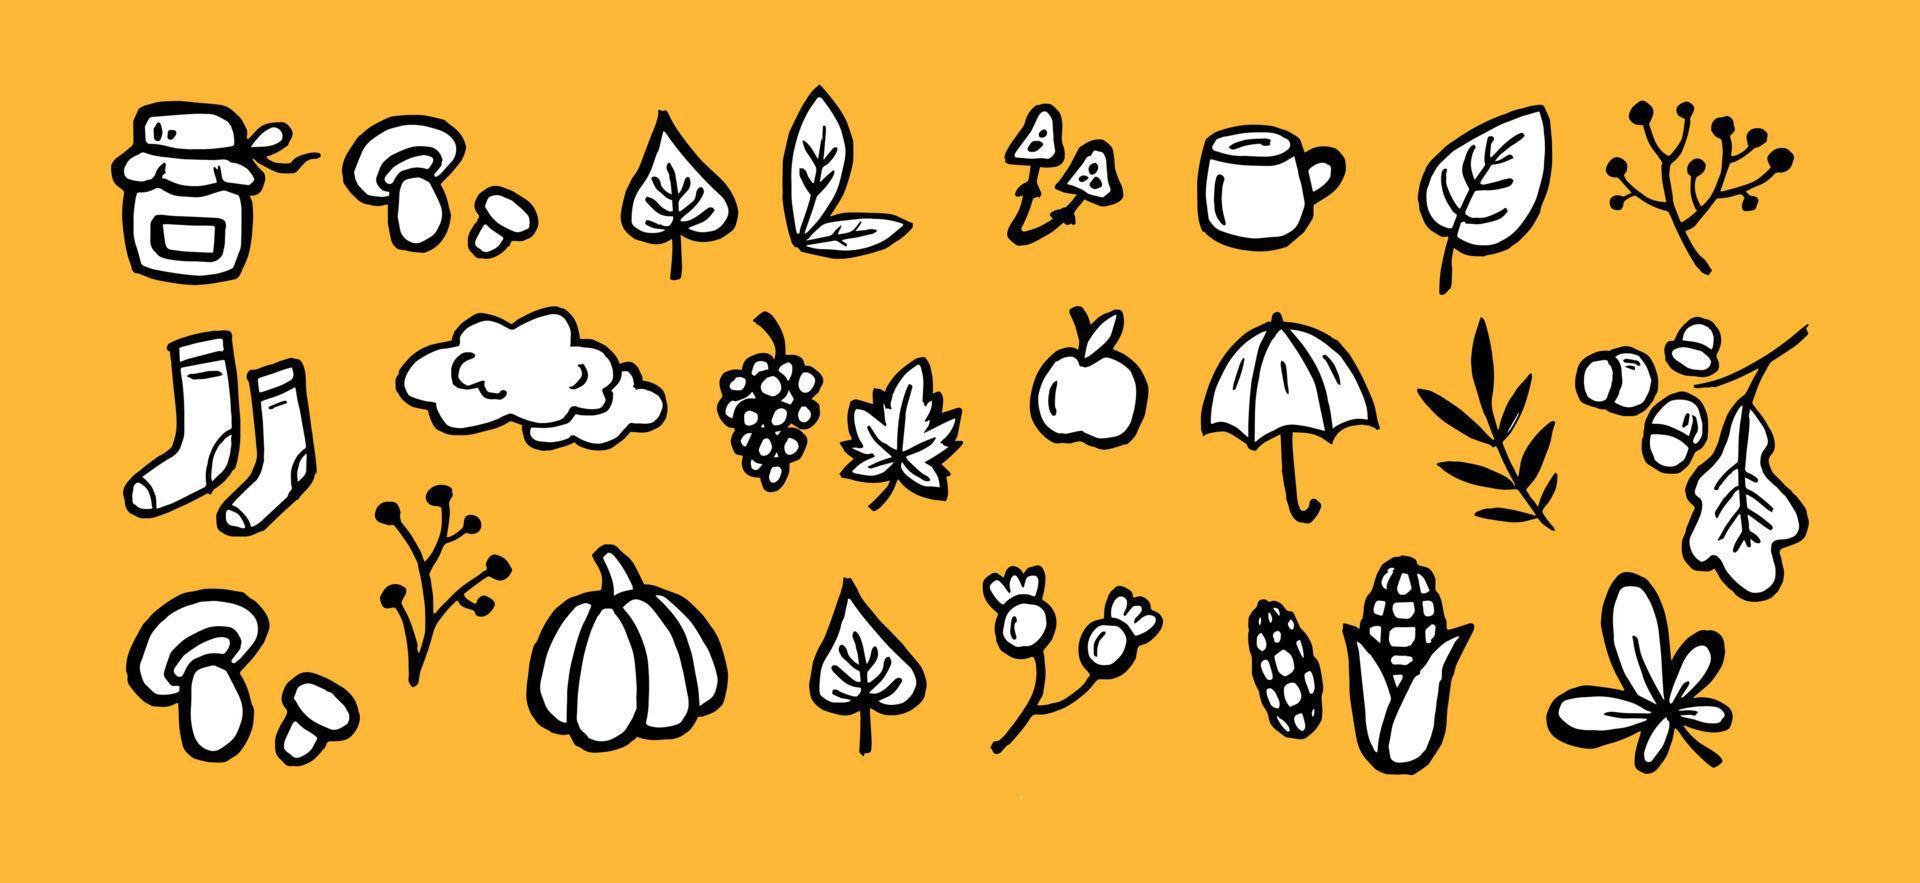 otoño establecer iconos. vector de imágenes prediseñadas de otoño en blanco y negro. conjunto de bocetos - hojas, cosecha, temporada. vegetales, plantas